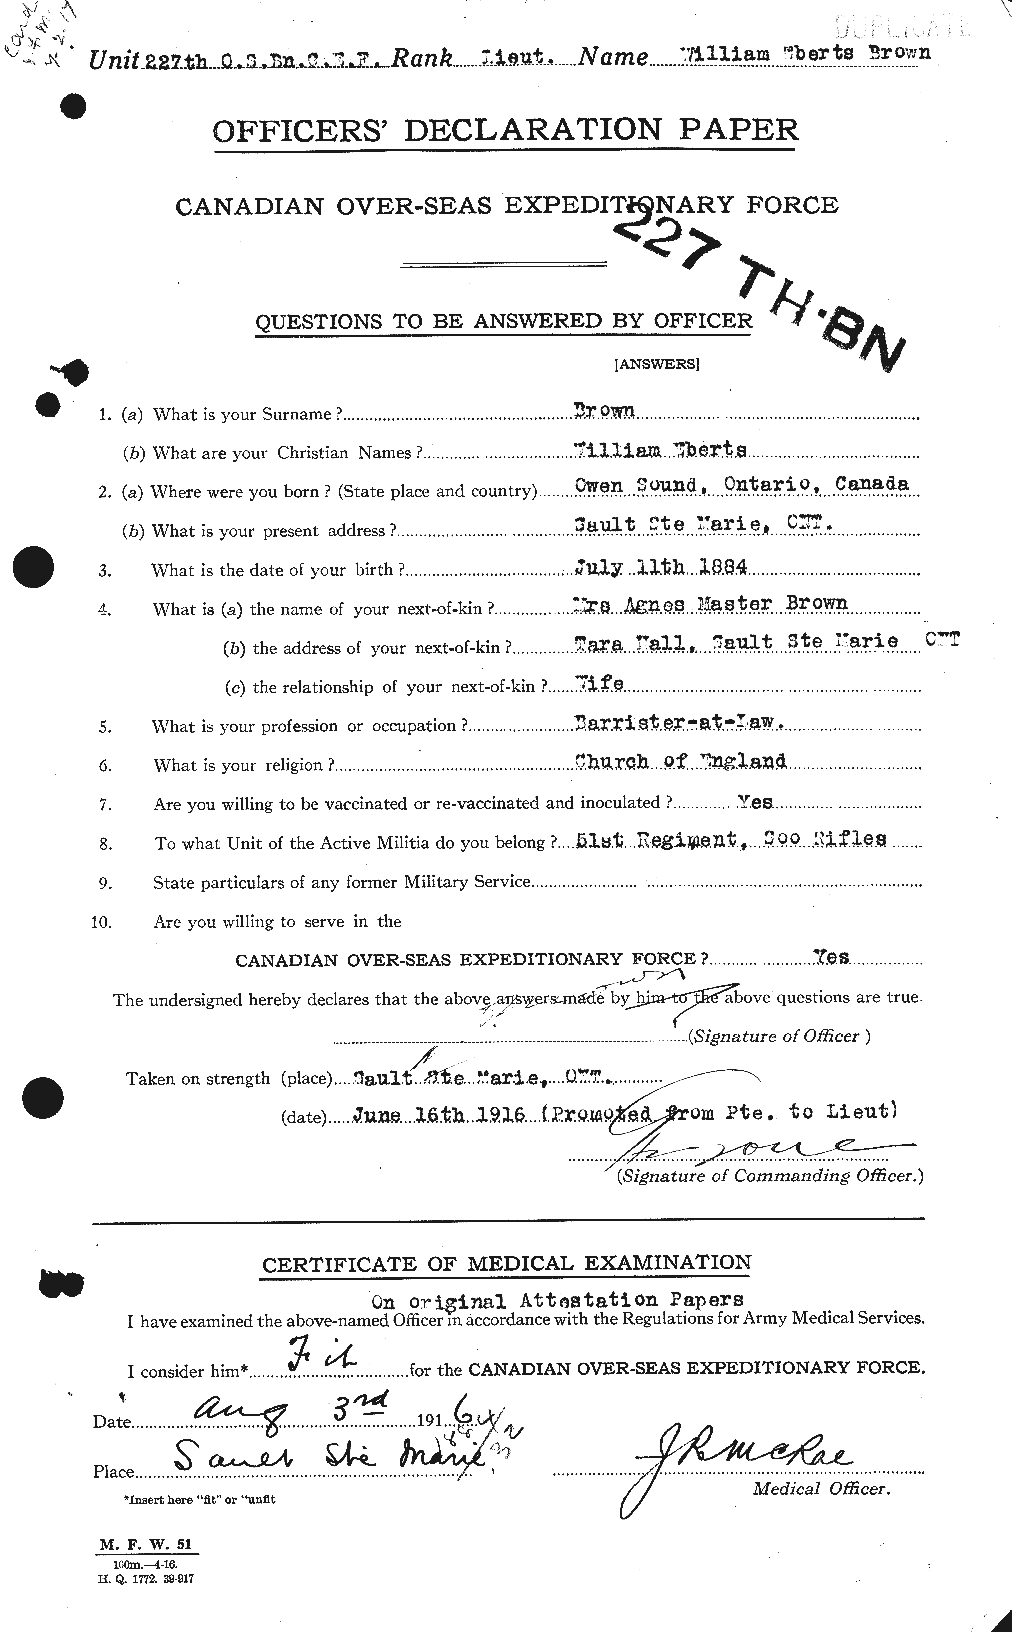 Dossiers du Personnel de la Première Guerre mondiale - CEC 268255a